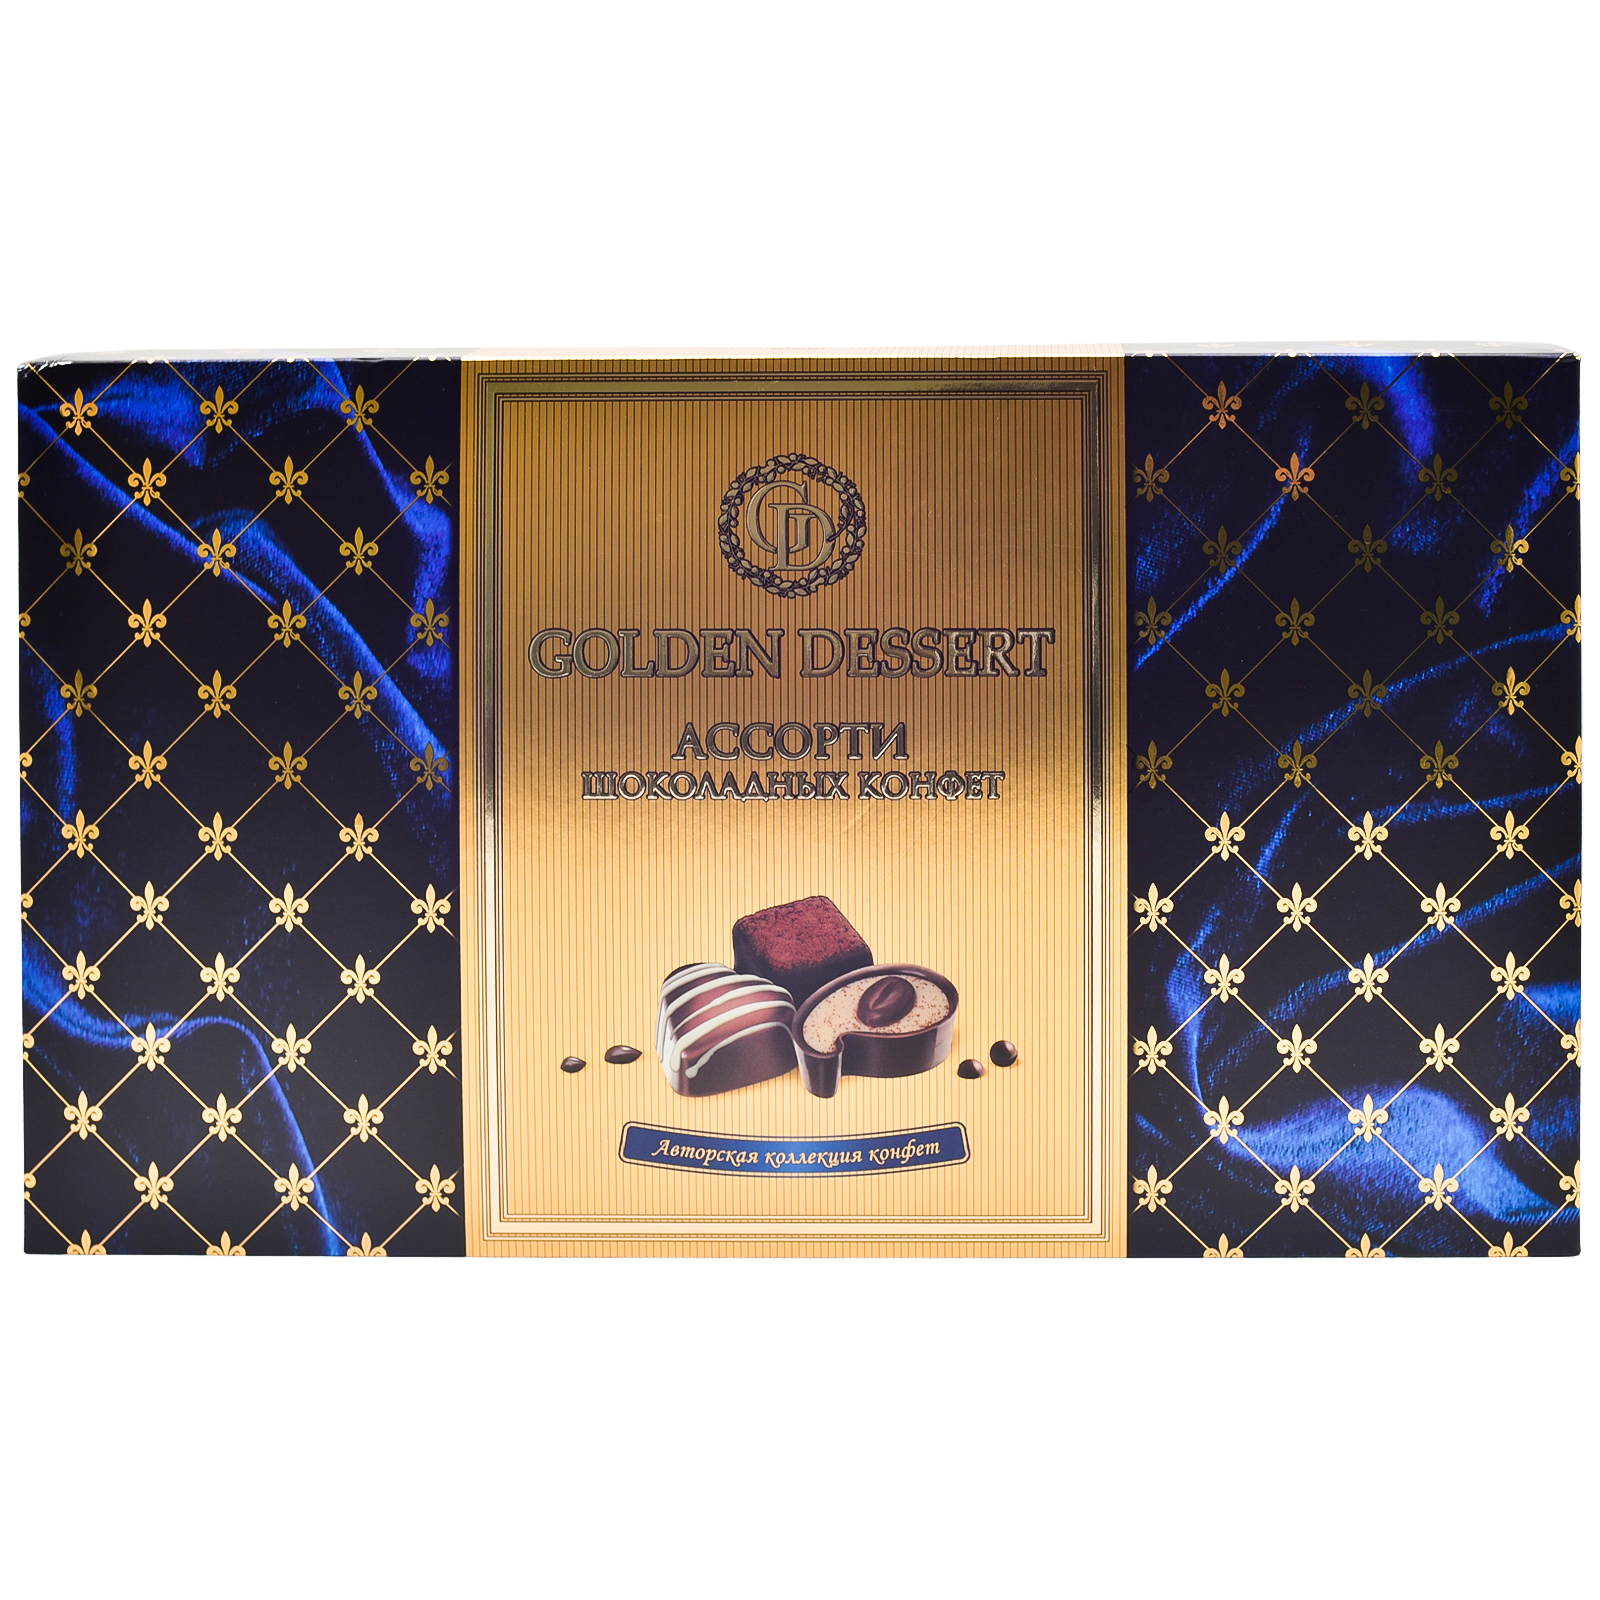 Шоколадные конфеты Golden Dessert ассорти 535 г